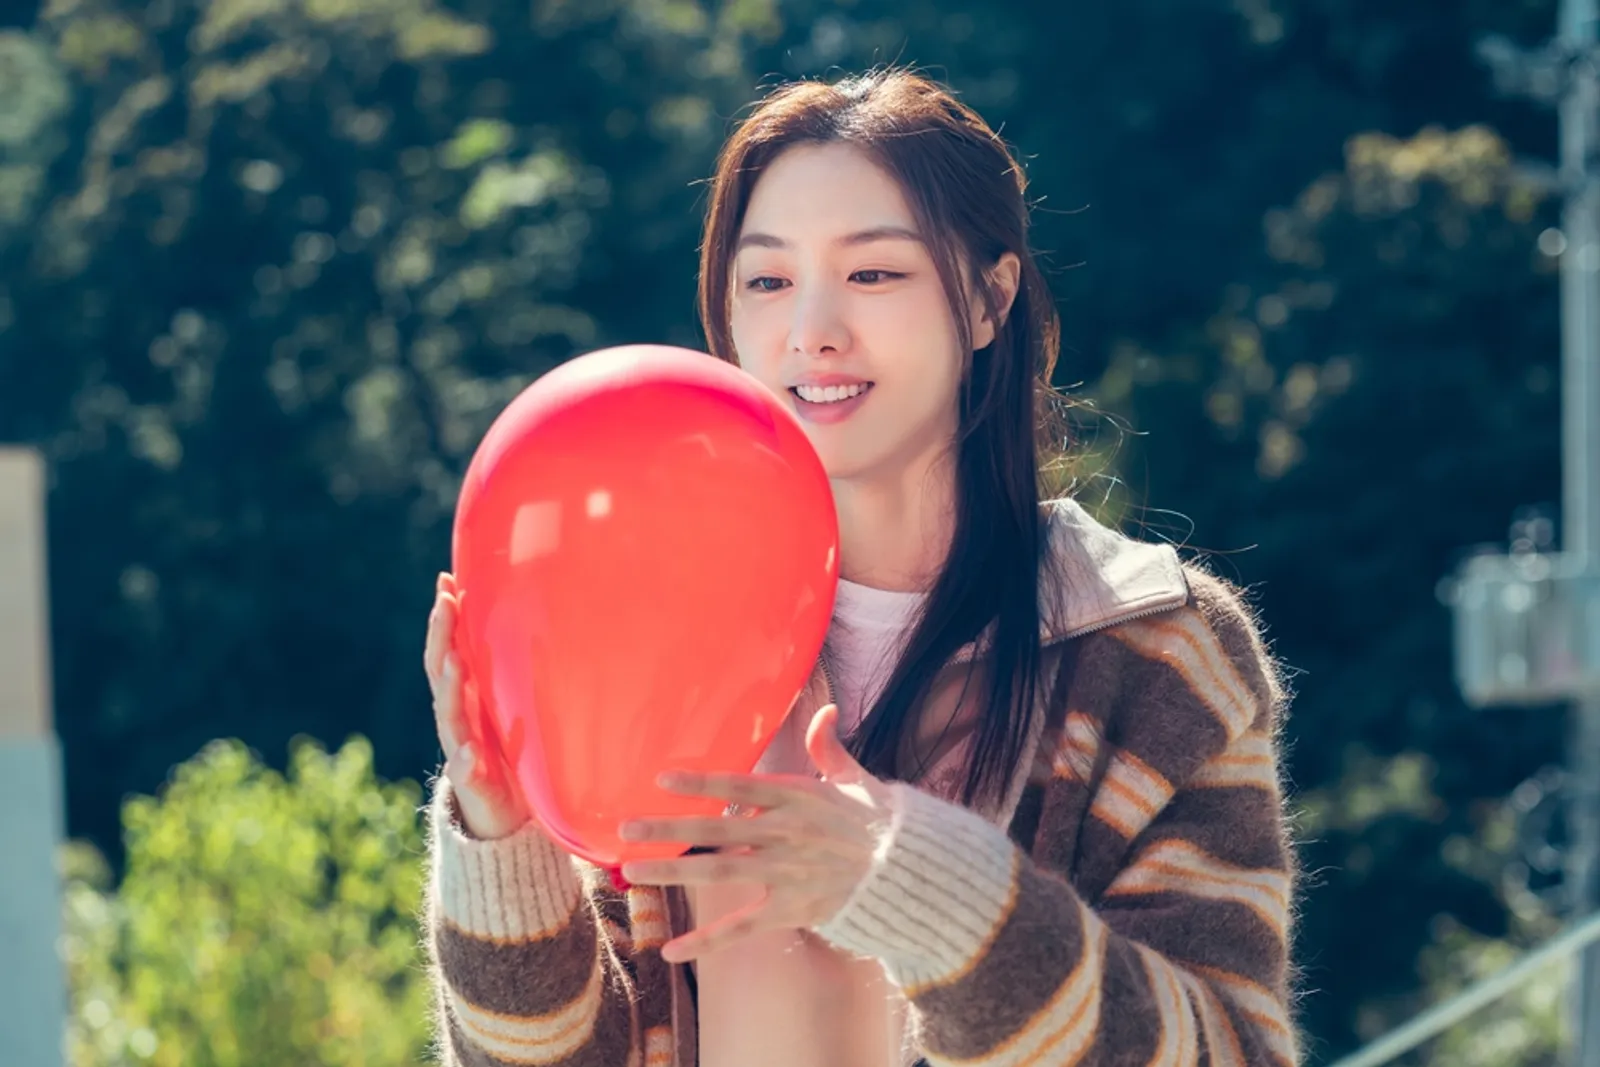 Pengorbanan dari Jo Eun Kang untuk Sahabatnya di 'Red Balloon'